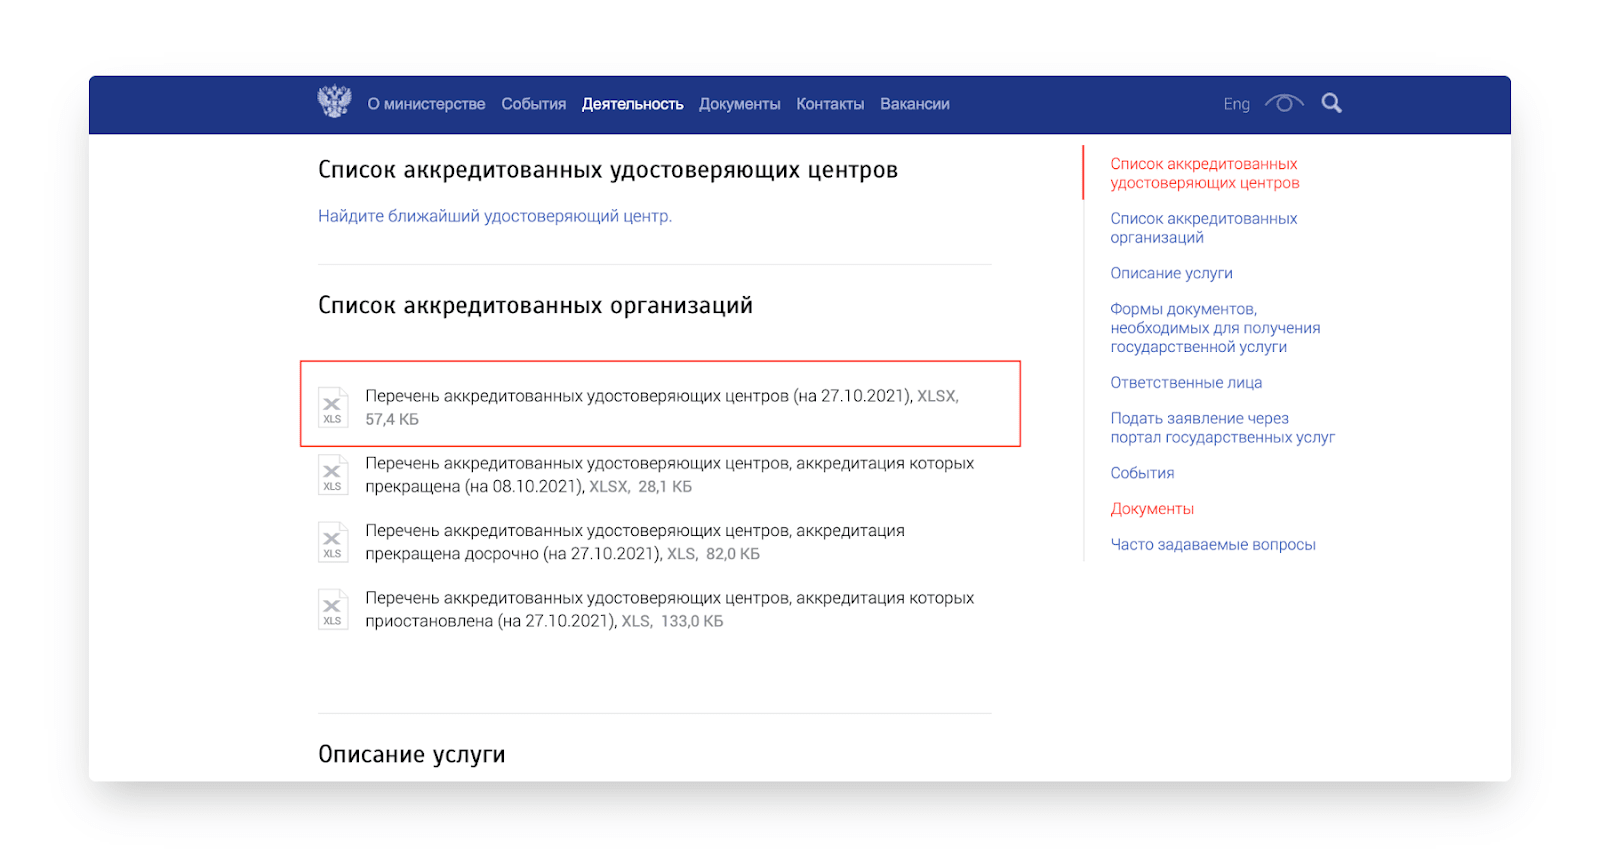 Банк россии информирует что истек срок действия сертификата ключа проверки укэп